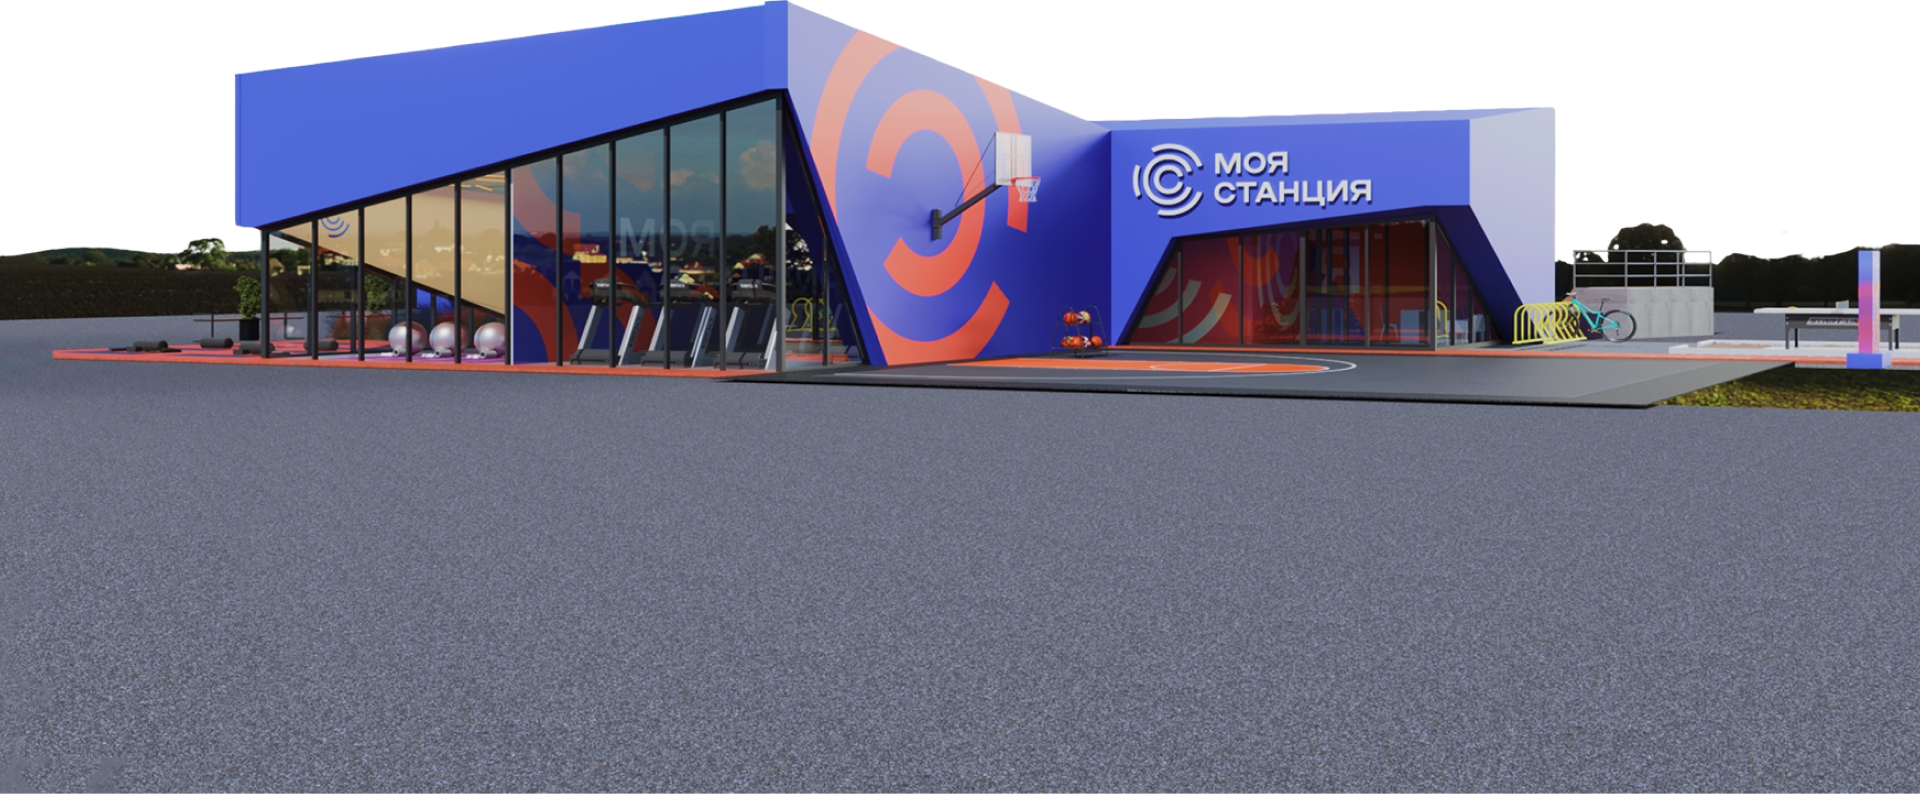 Здание спортклуба "Моя станция" со спортивной площадкой, велопарковкой и пространством для йоги